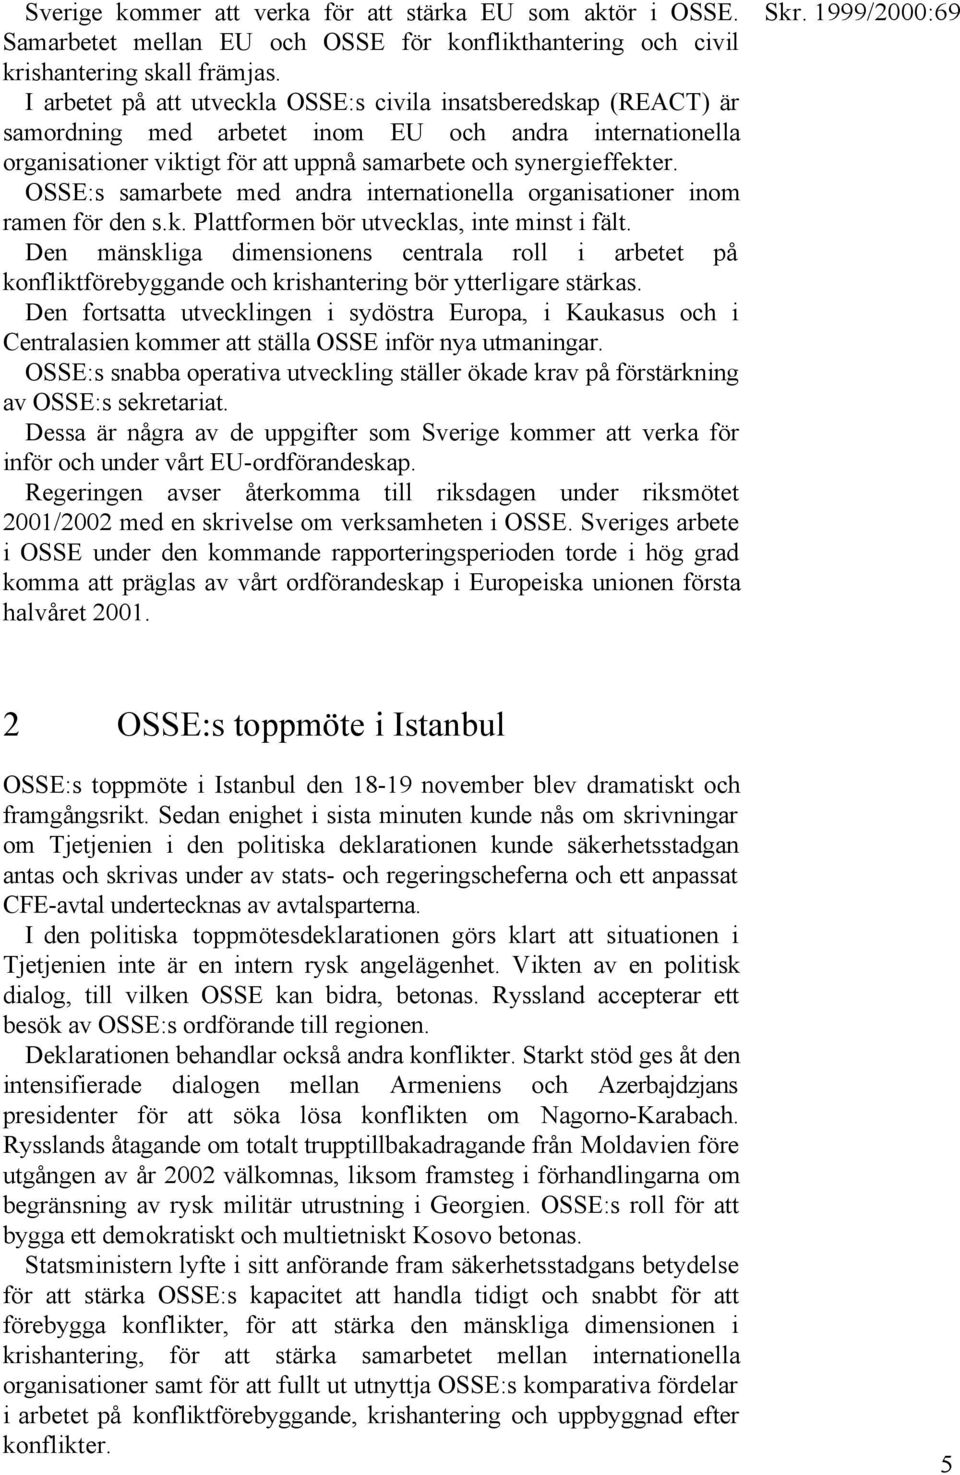 OSSE:s samarbete med andra internationella organisationer inom ramen för den s.k. Plattformen bör utvecklas, inte minst i fält.